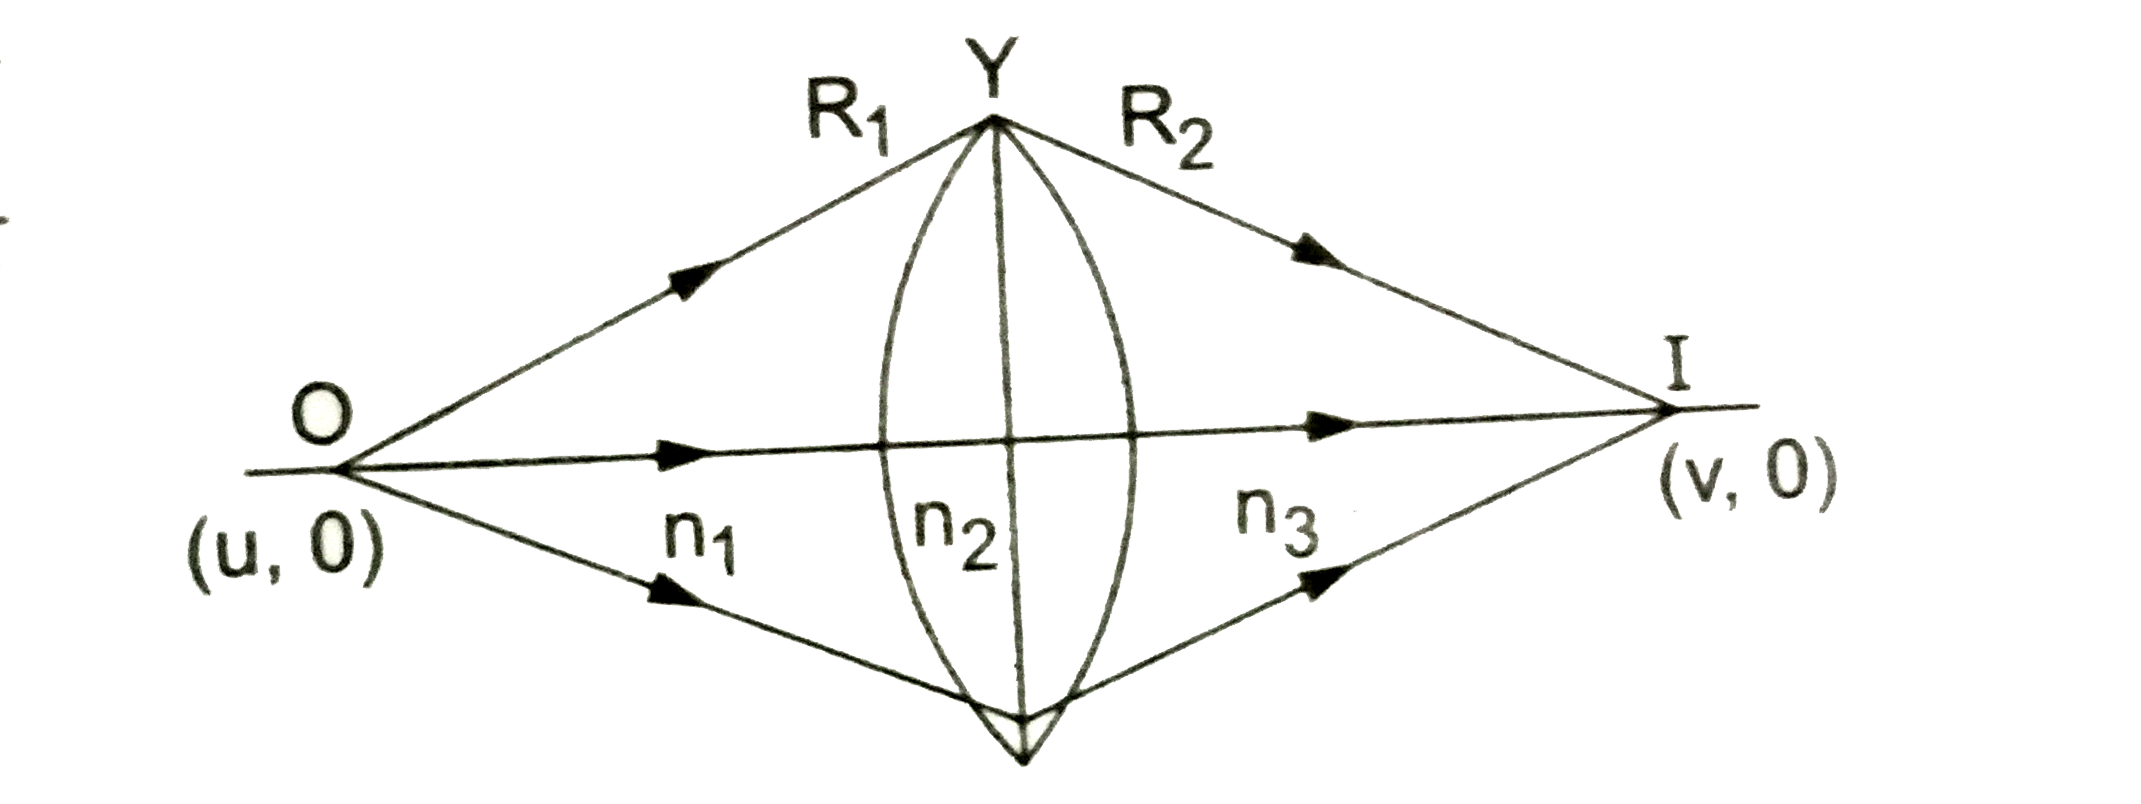 R(1) तथा R(2) वक्रता -त्रिज्यावाली दो सतहों से घिरे एक लेंस को चित्र के अनुरूप रखा गया है। सिद्ध करें की   n(3)/v-n(1)/u=(n(2)-n(1))/R(1)+(n(3)-n(2))/R